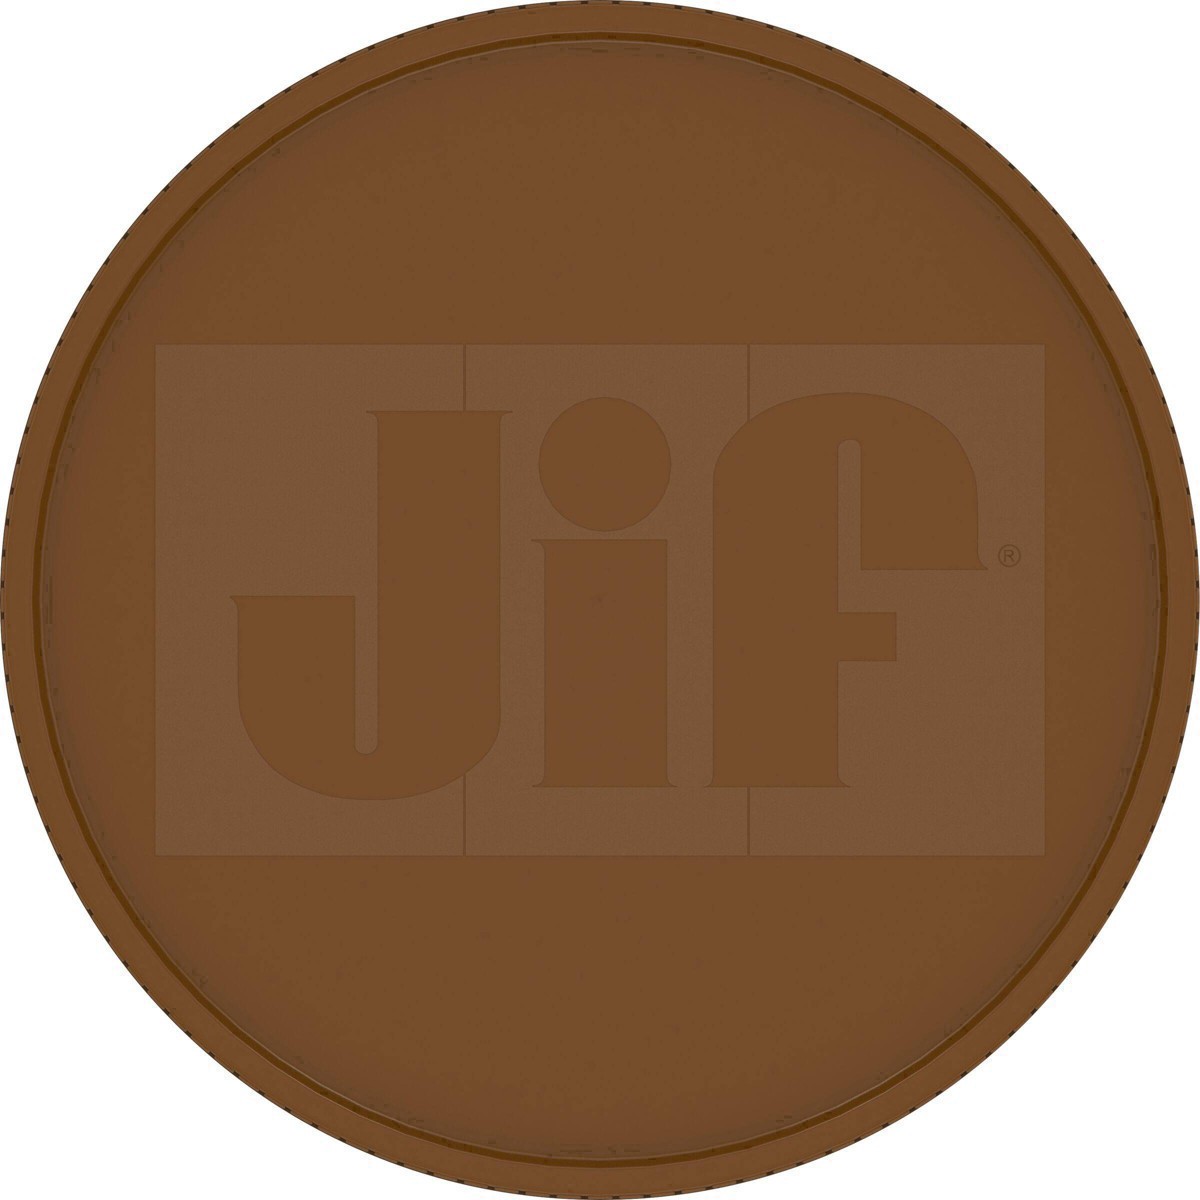 slide 15 of 41, Jif Natural Crunchy Peanut Butter, 16 oz